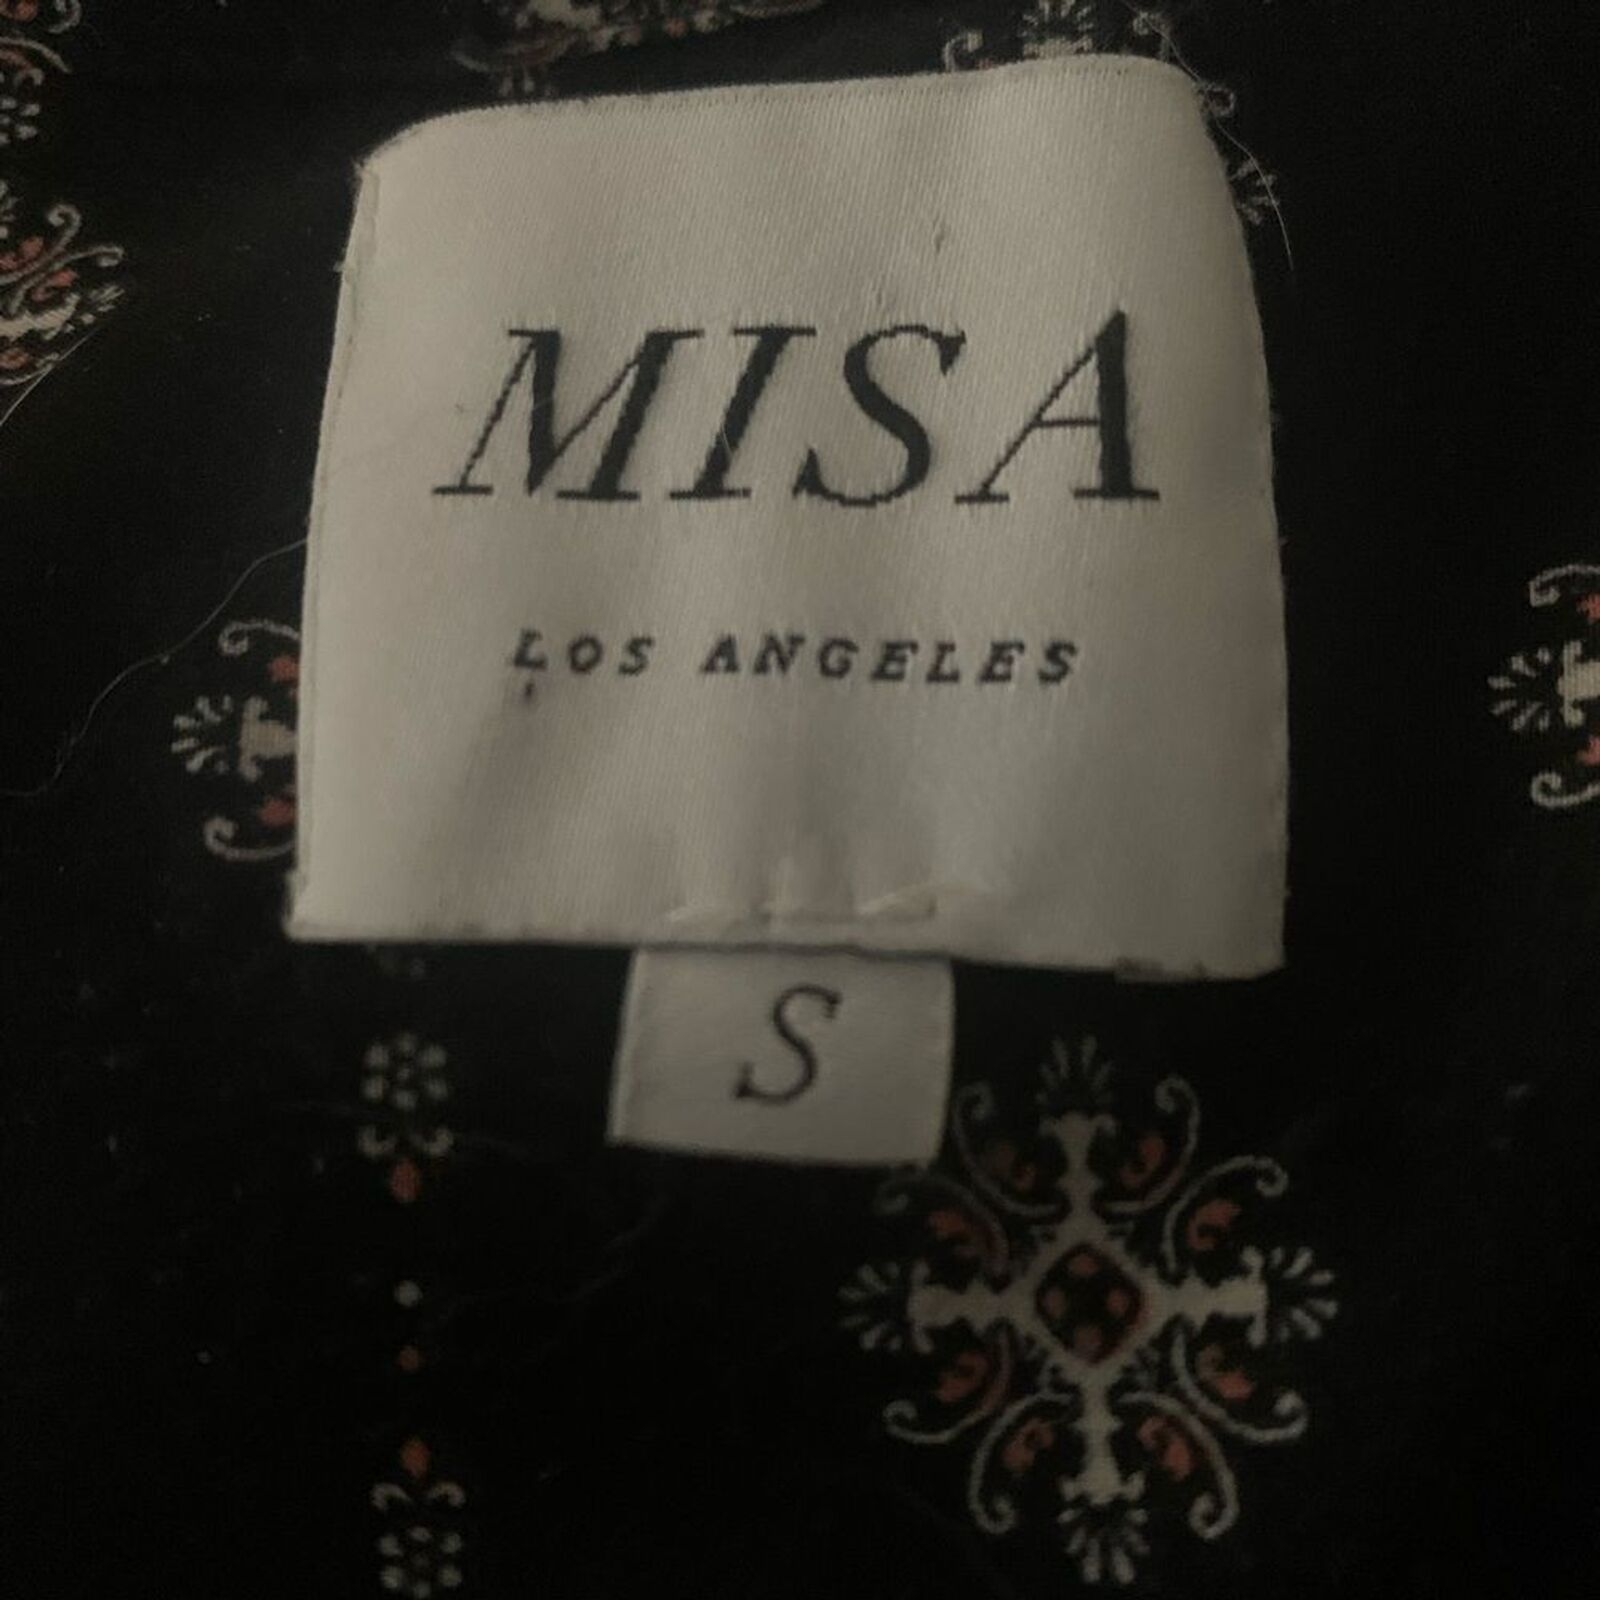 Misa Los Angeles top tassel tie - image 5